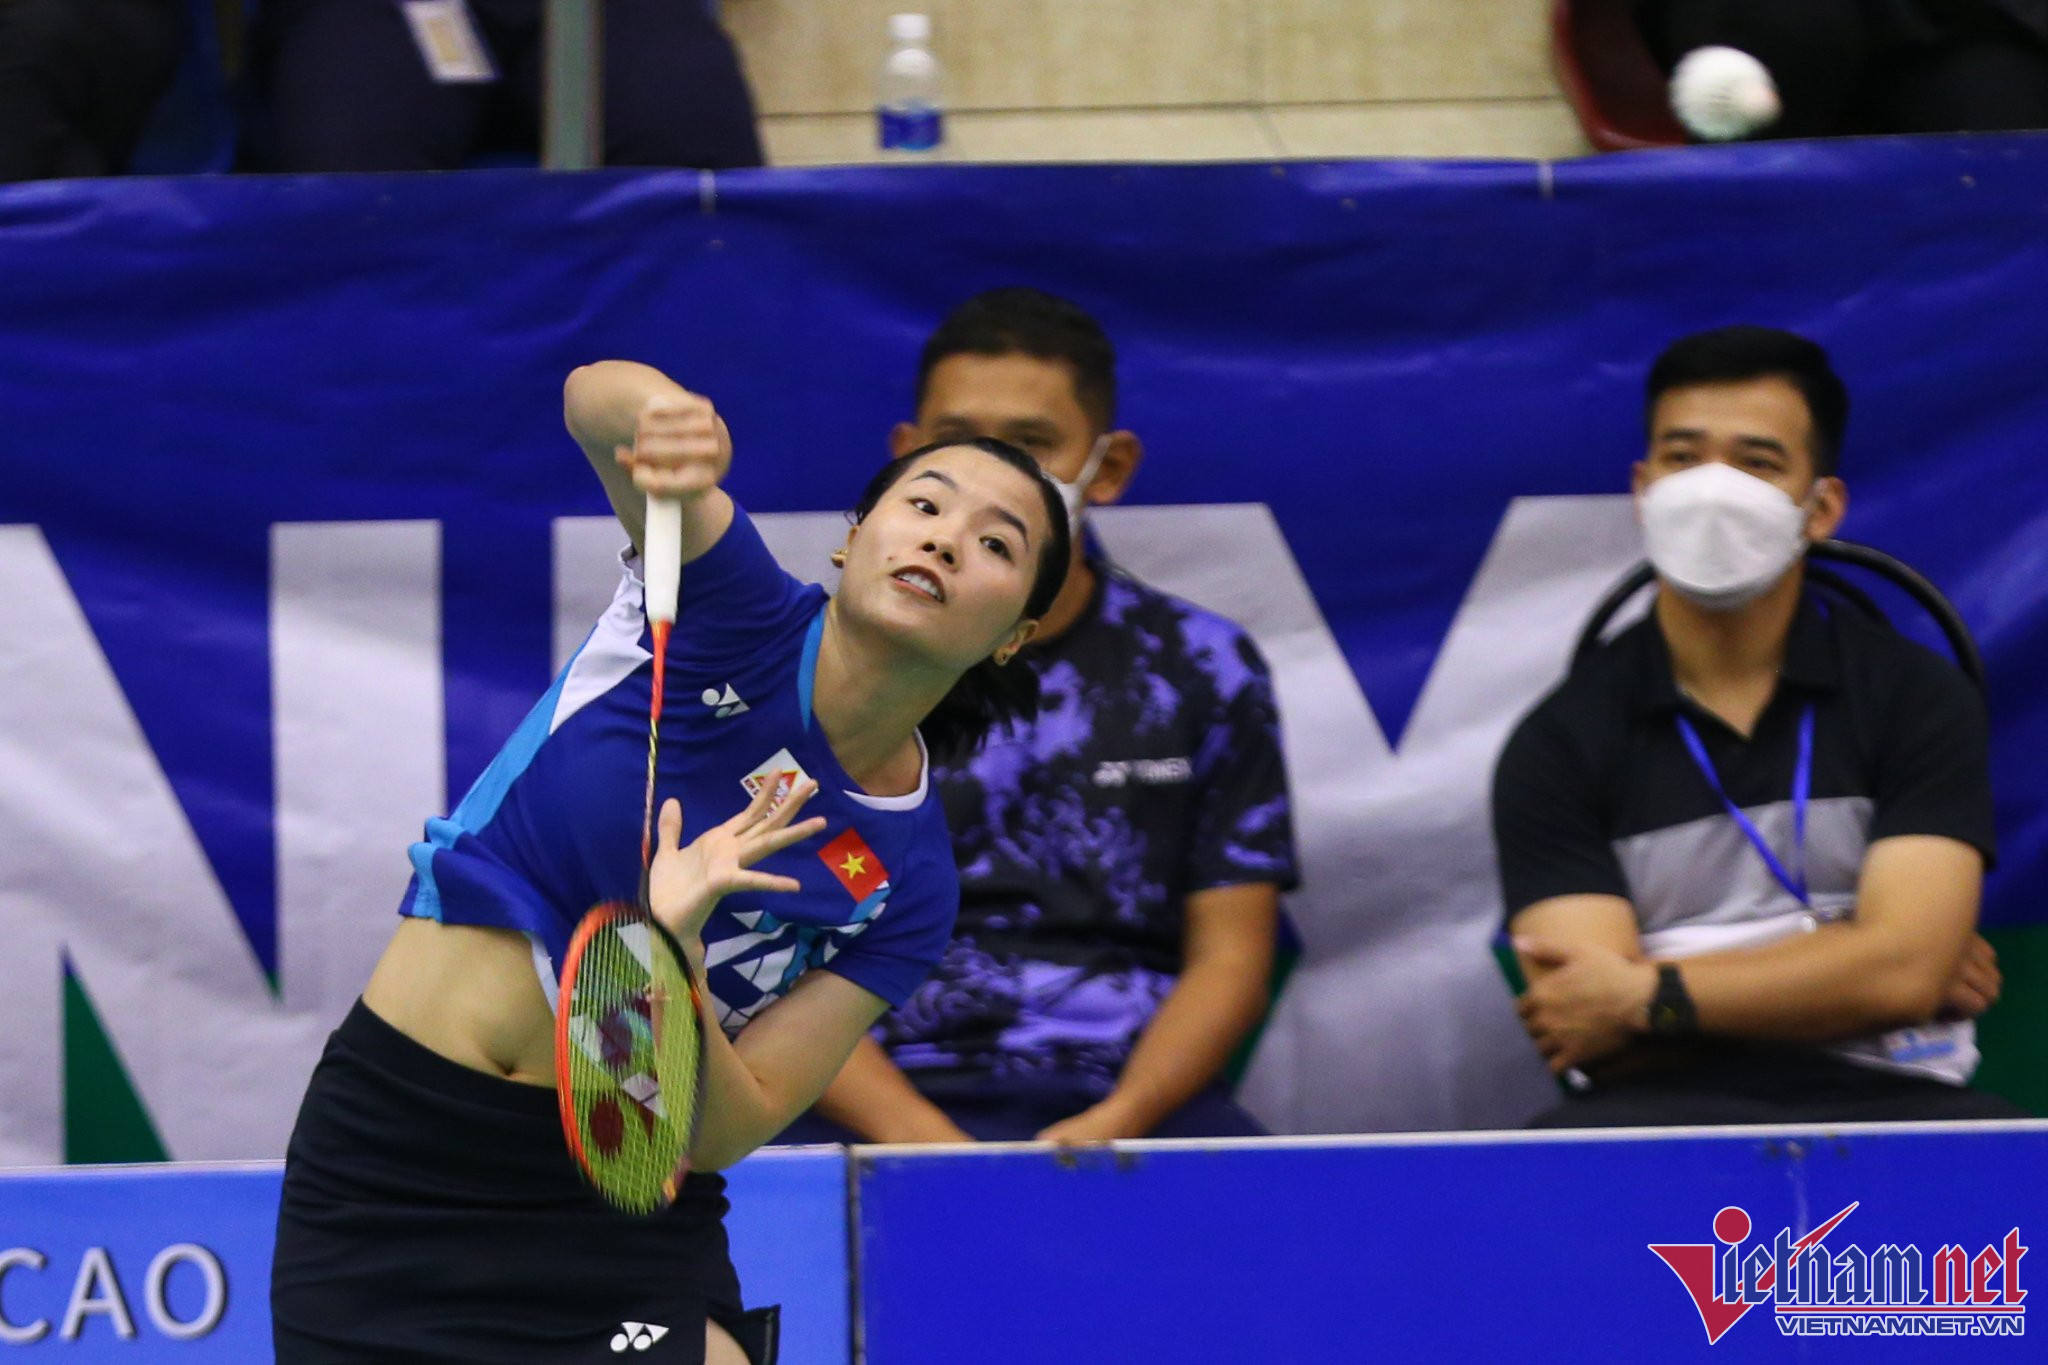 此前曾代表越南參加2021年奧運會的網球選手在2022年越南公開賽上排名與第6位相同，這是翠玲第5次參加該賽事。